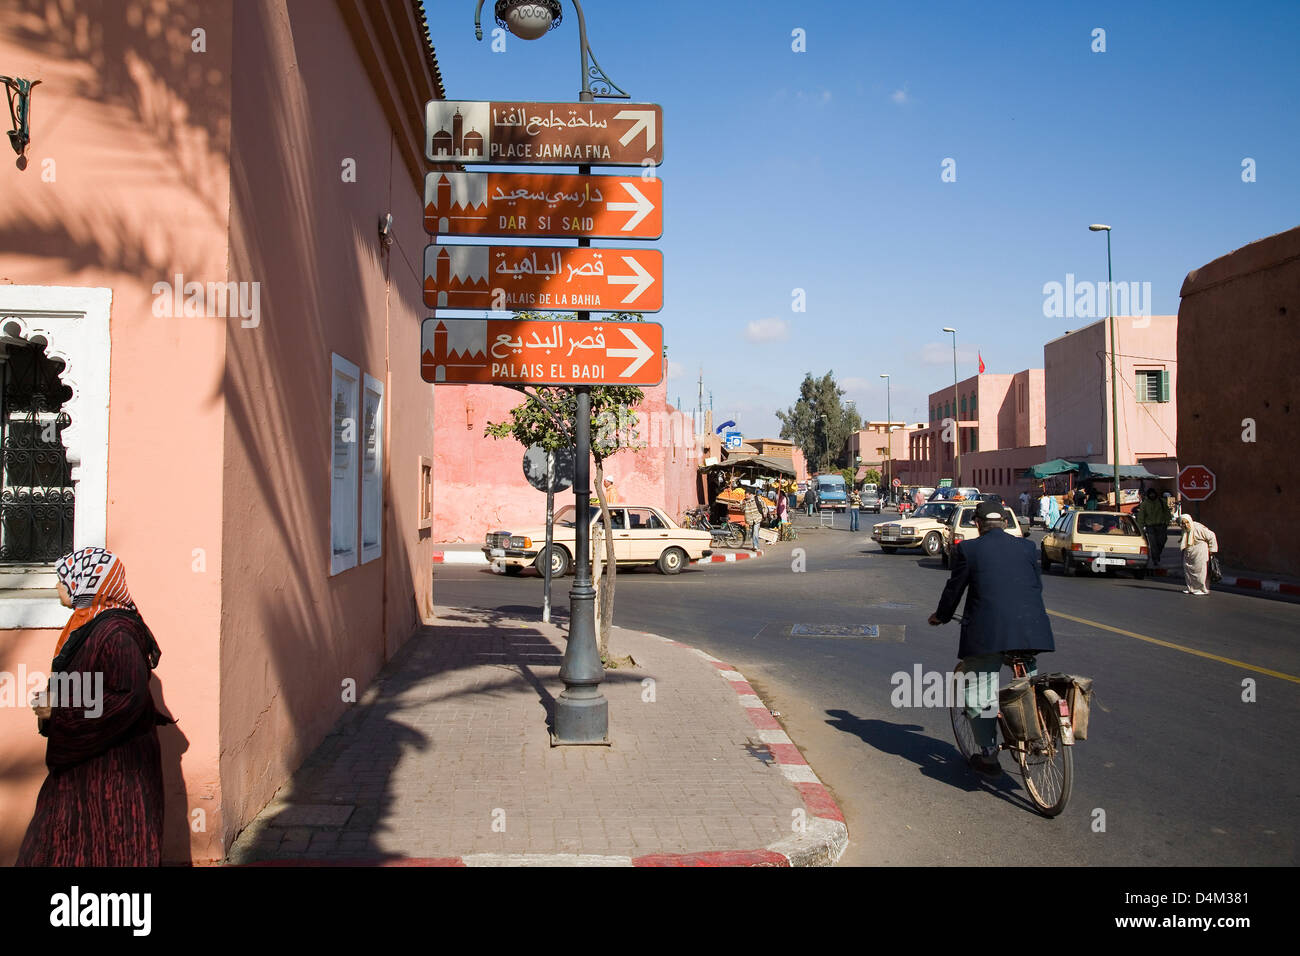 africa, morocco, marrakech Stock Photo